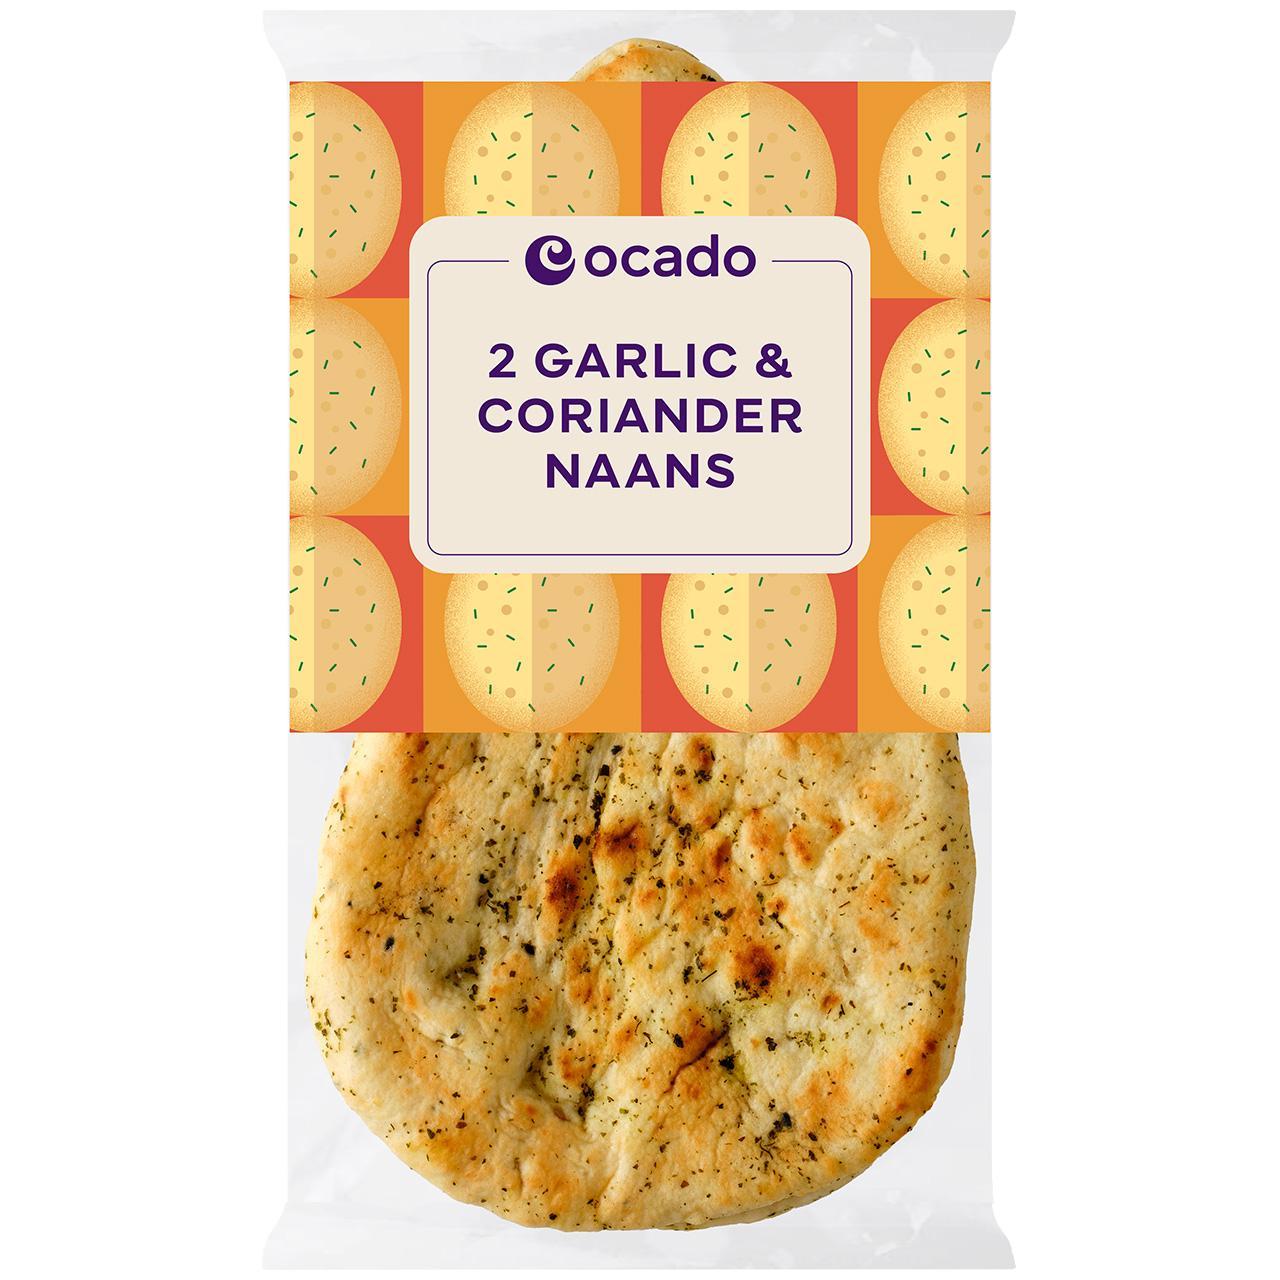 Ocado 2 Garlic & Coriander Naans